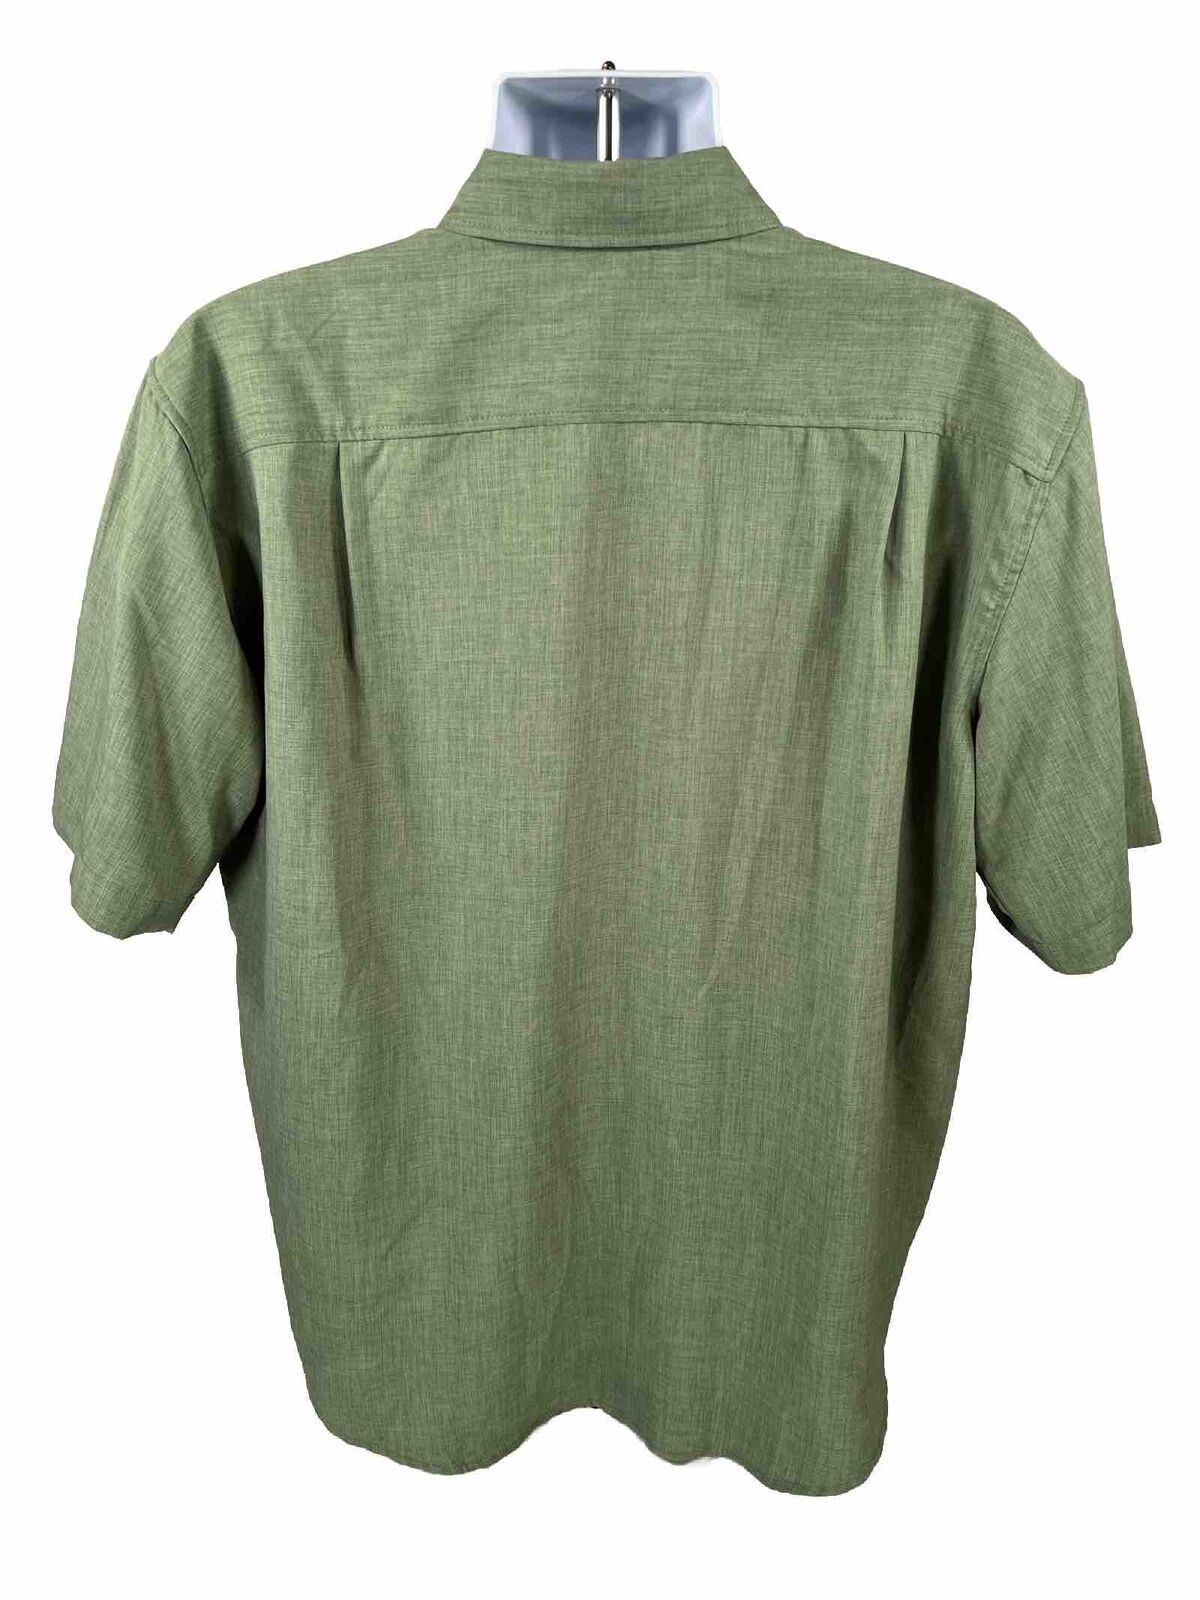 Orvis Men's Green Short Sleeve Button Up Casual Shirt - XL